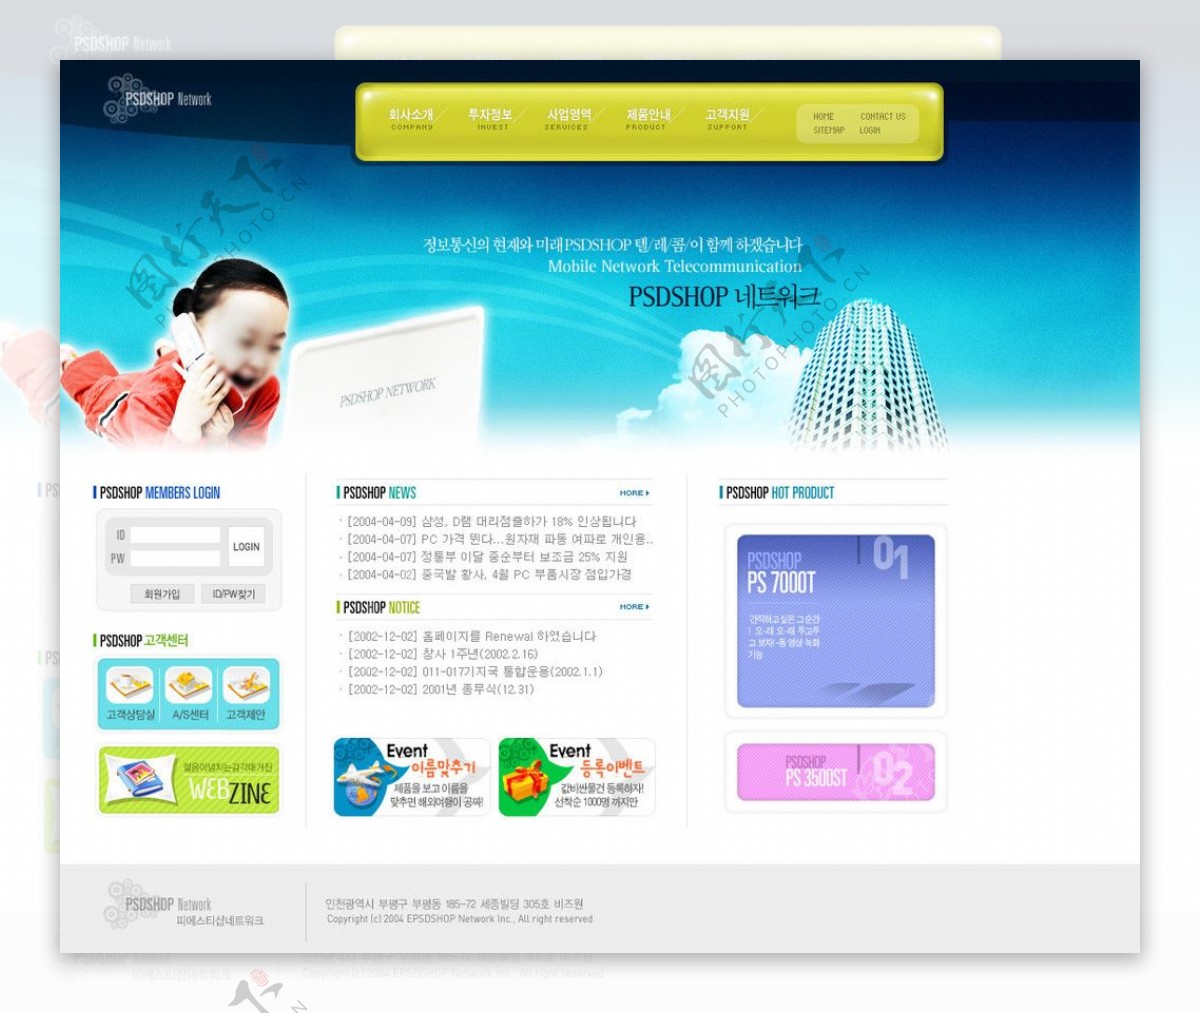 韩国儿童网站图片